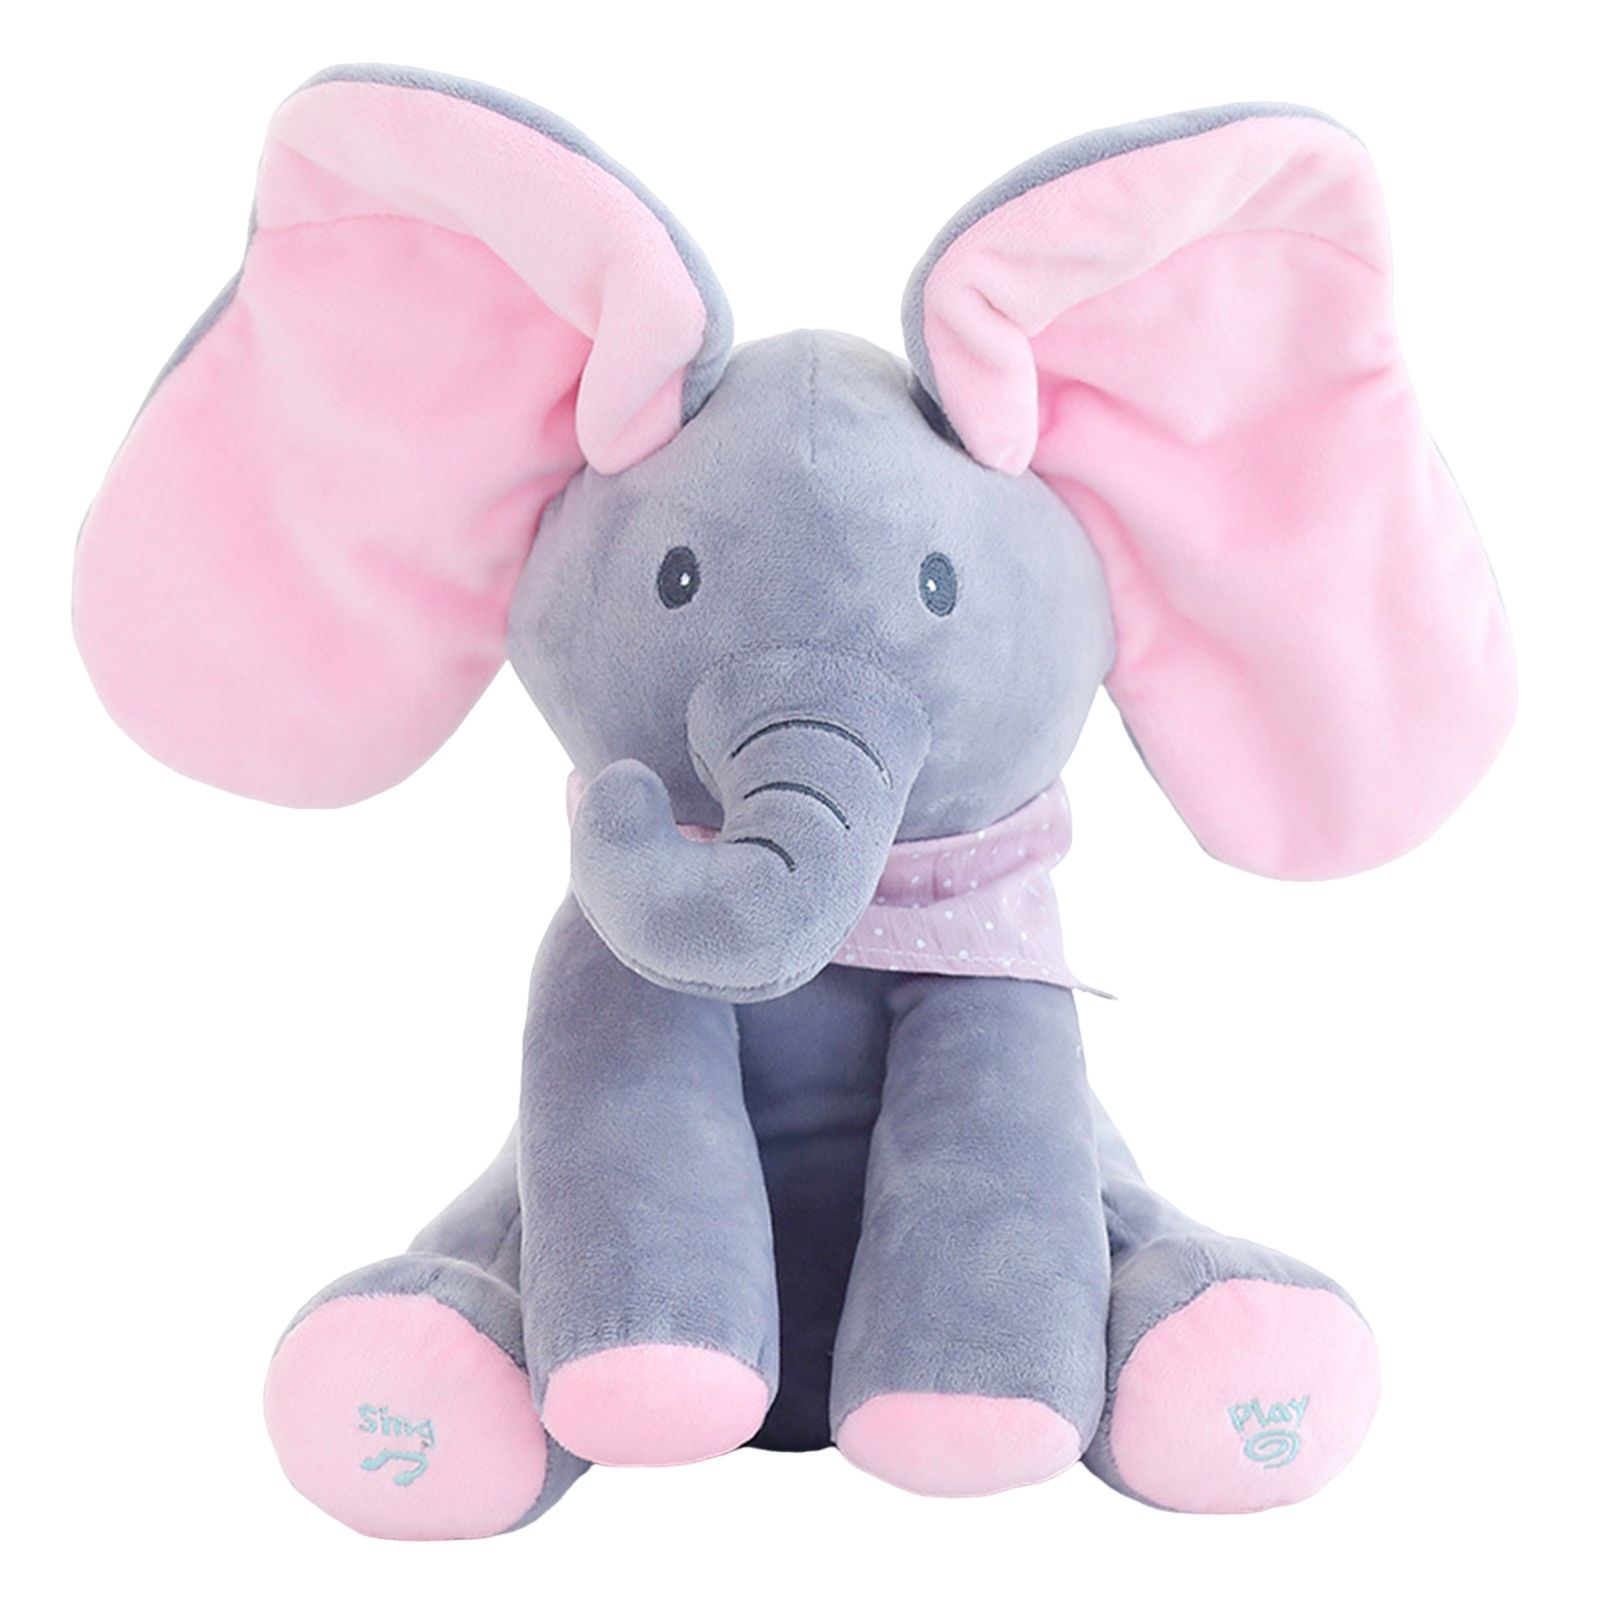 Мягкие слоники. Слоненок Элефант игрушка. Интерактивная игрушка слон Дамбо. Интерактивная игрушка слон Лолли,. Слон плюшевый мягкая игрушка.